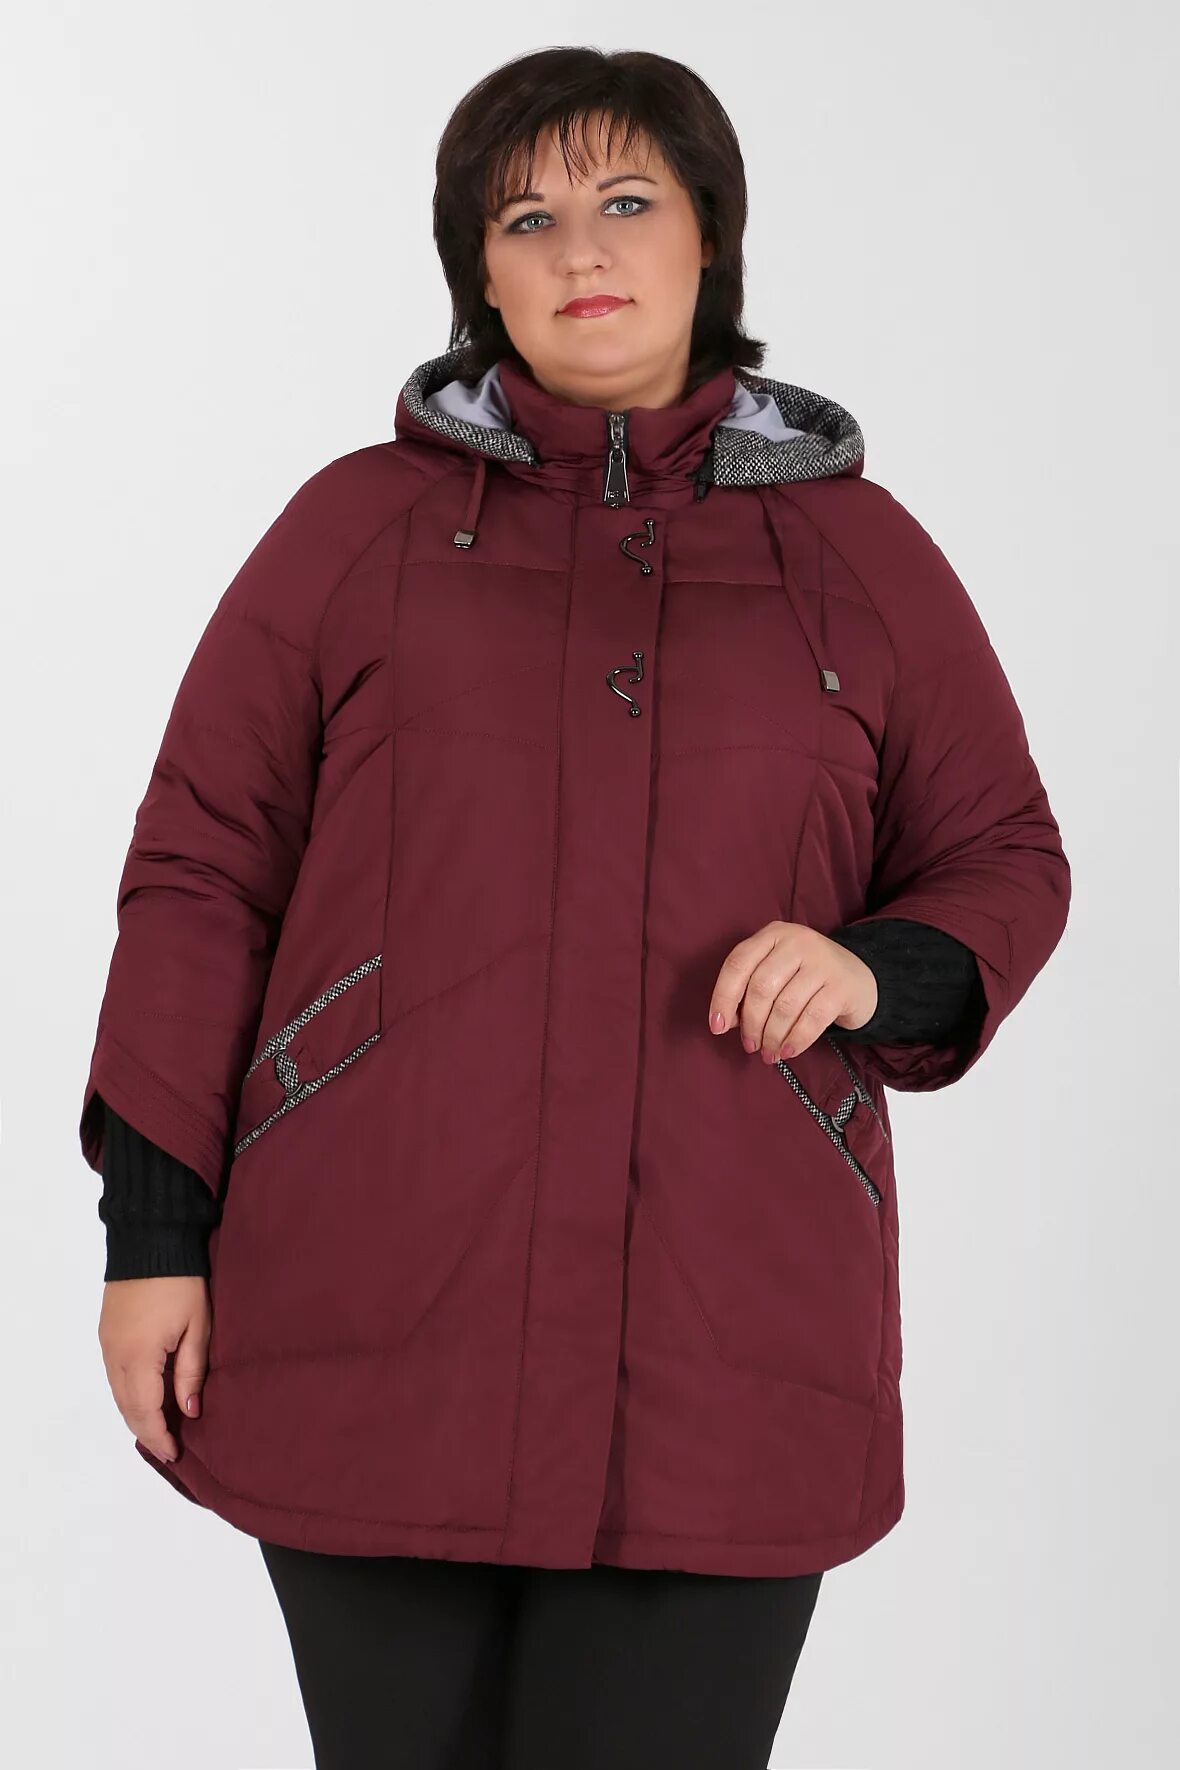 Mishel утепленная куртка 56 размер. Mishel утепленная куртка 70 размер. Валберис куртки размер 68-70 женские демисезонные. Зимняя куртка женская валберис 60 размер.